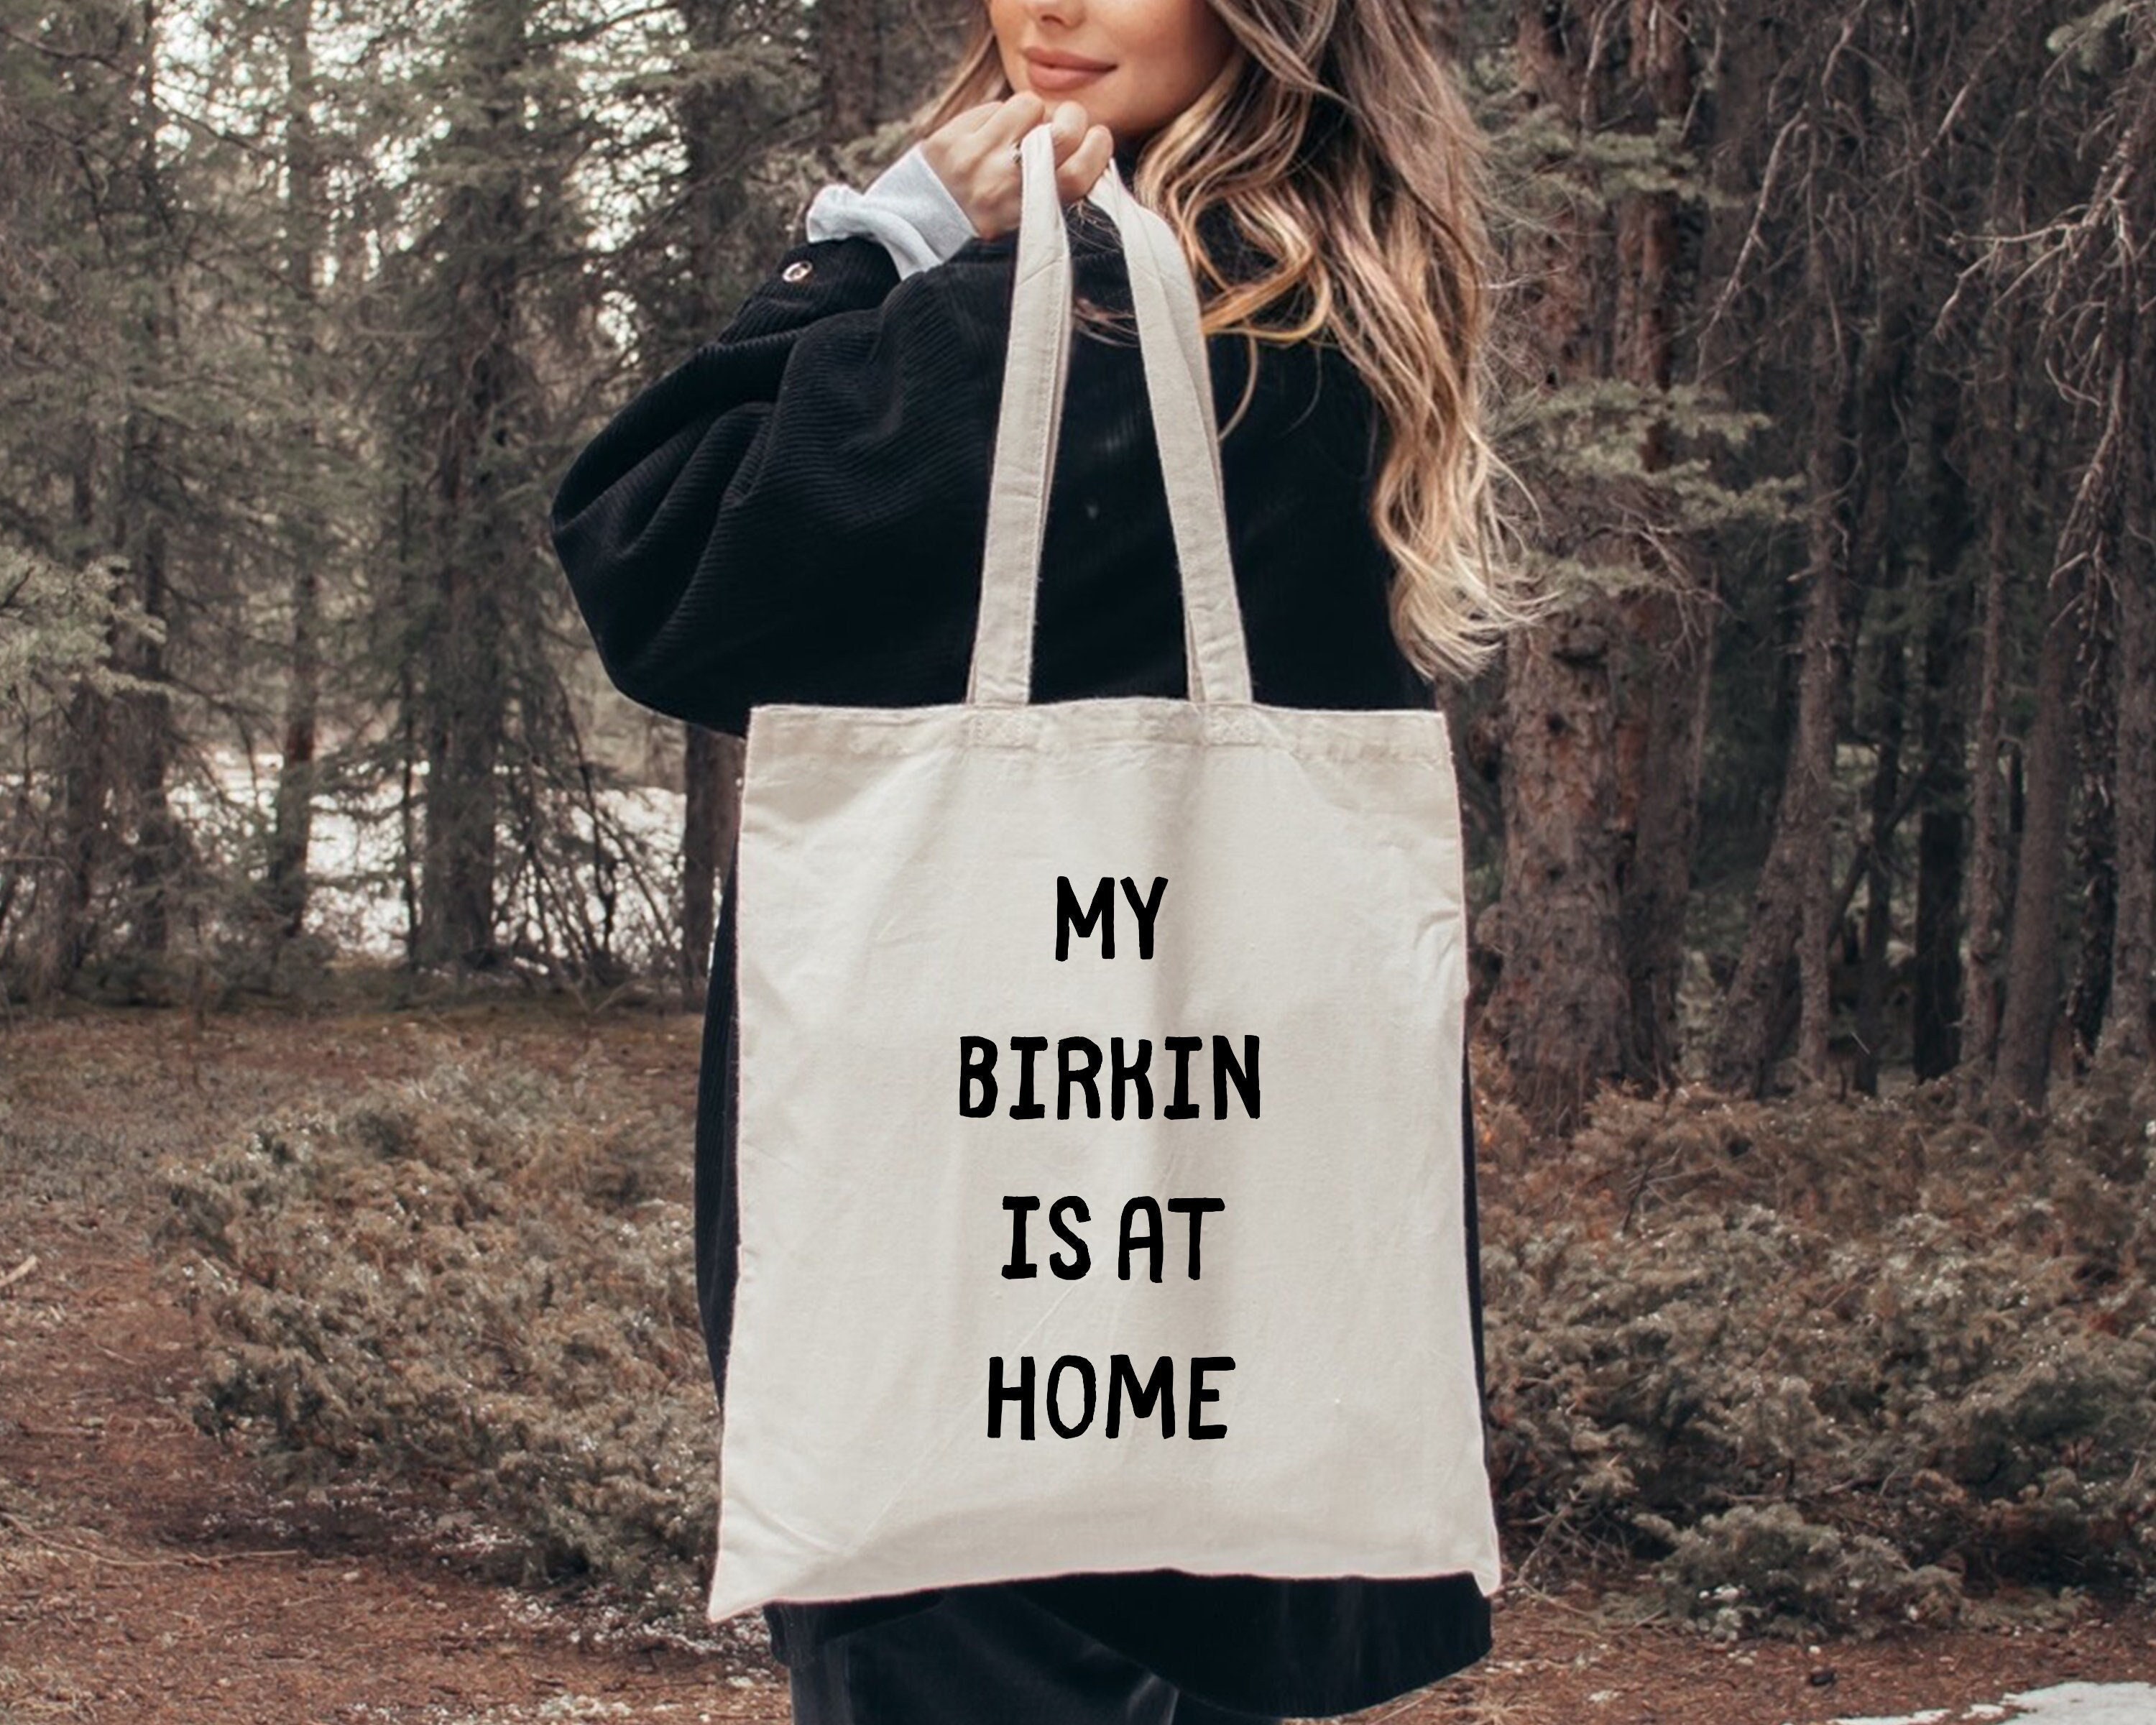 Natural Tote Bag Hermes Birkin 